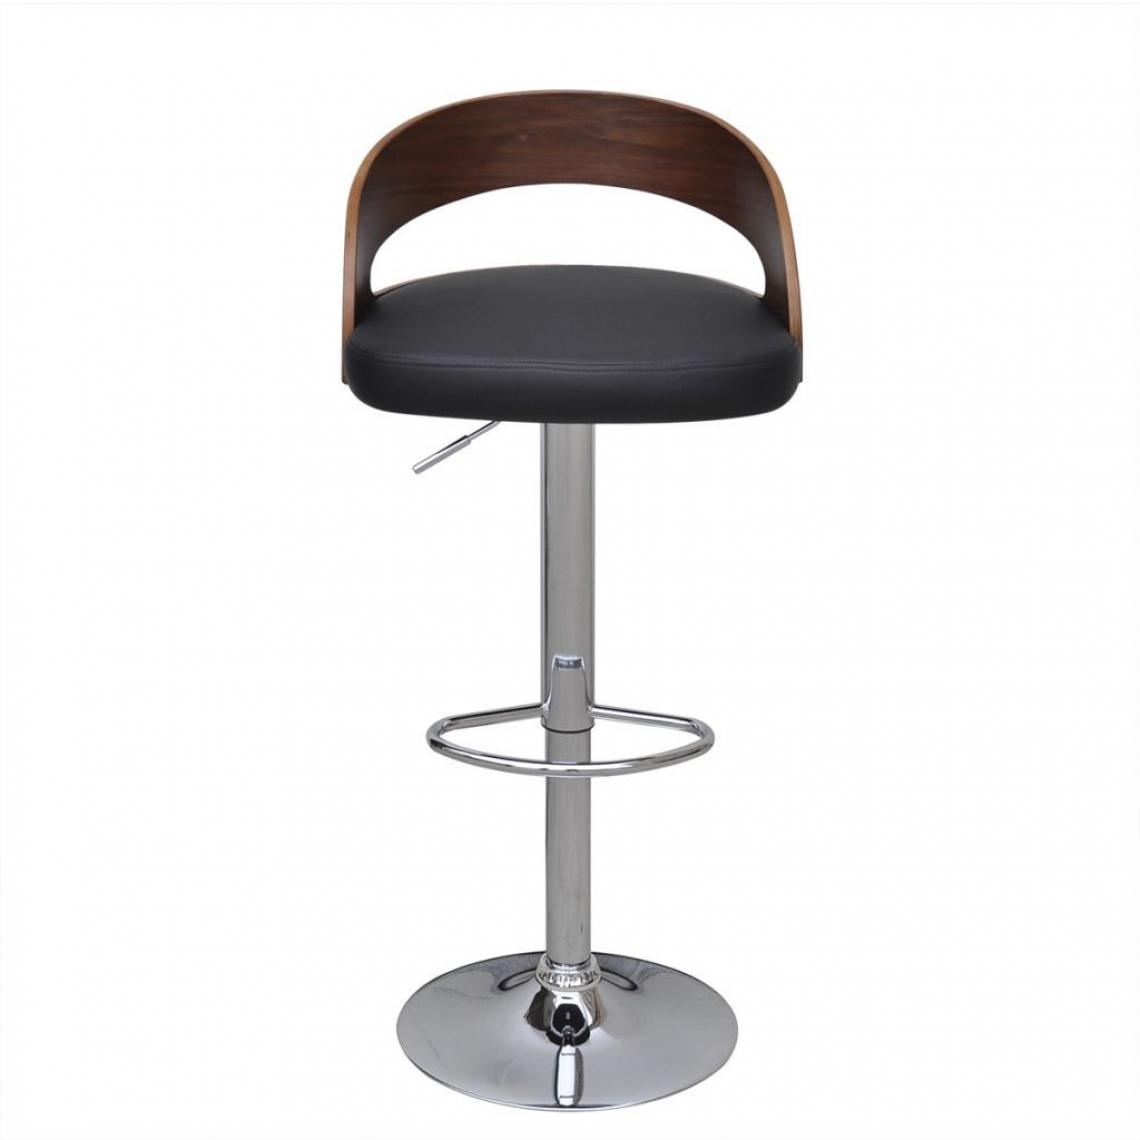 Helloshop26 - Lot de deux tabourets de bar design chaise siège cadre en bois courbé hauteur réglable 1202067 - Tabourets